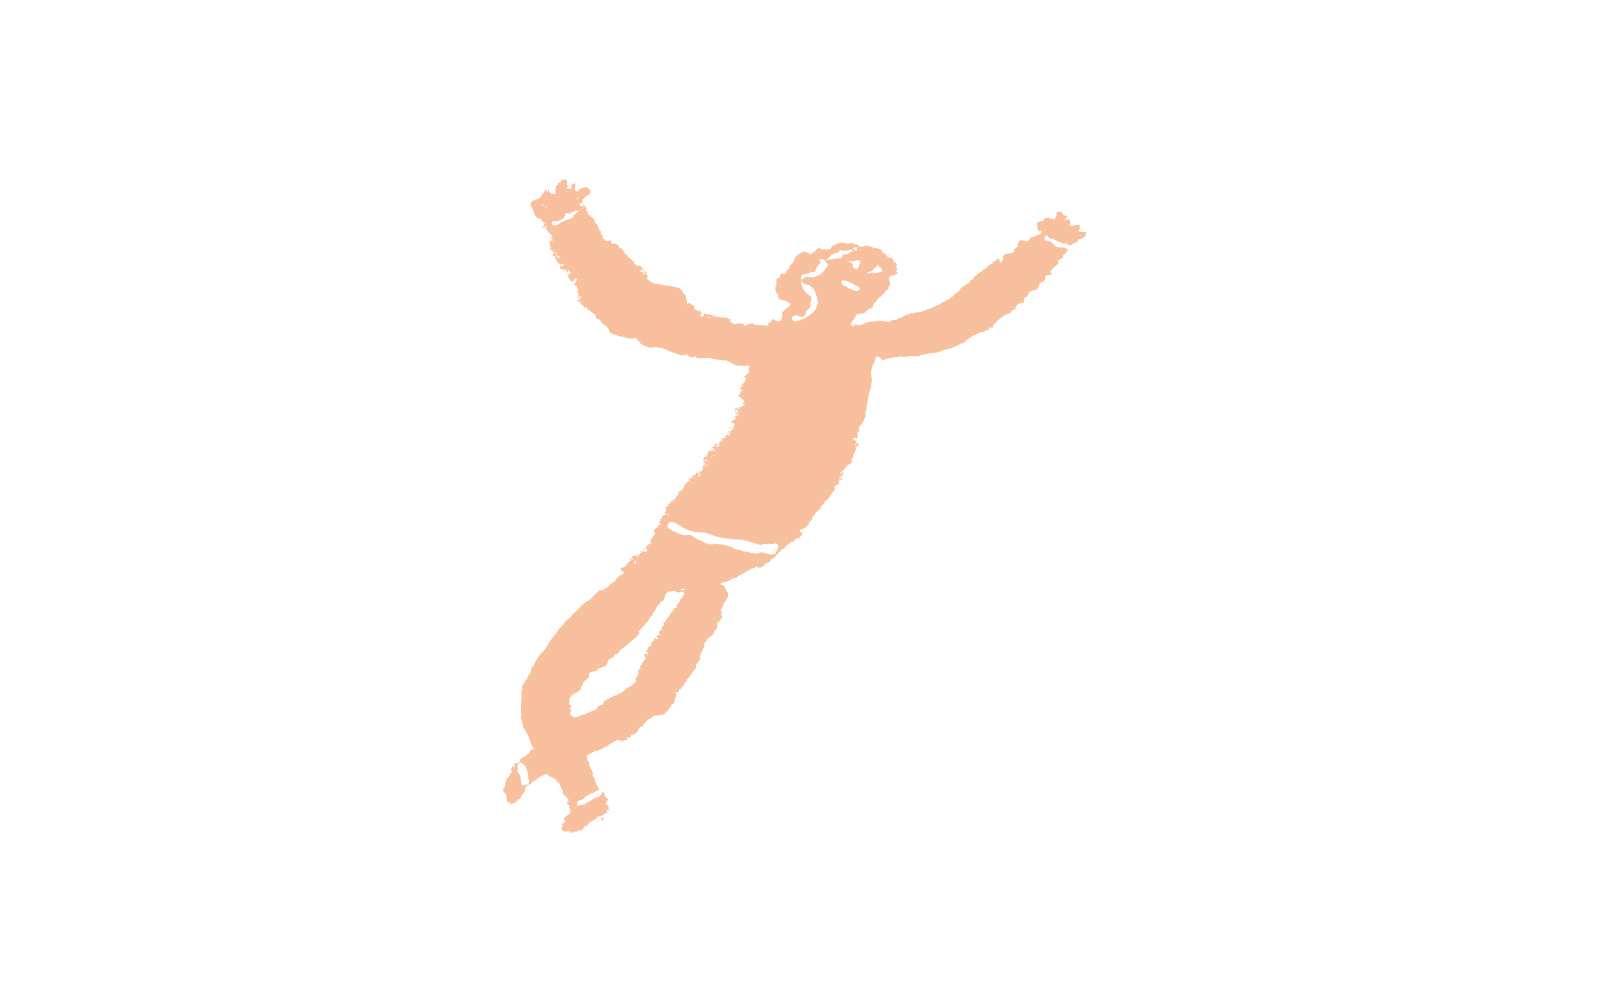 【イラスト】両手を広げて跳んでいるピンクの人。足はクロスさせていて、解き放たれたかのような表情をしている。